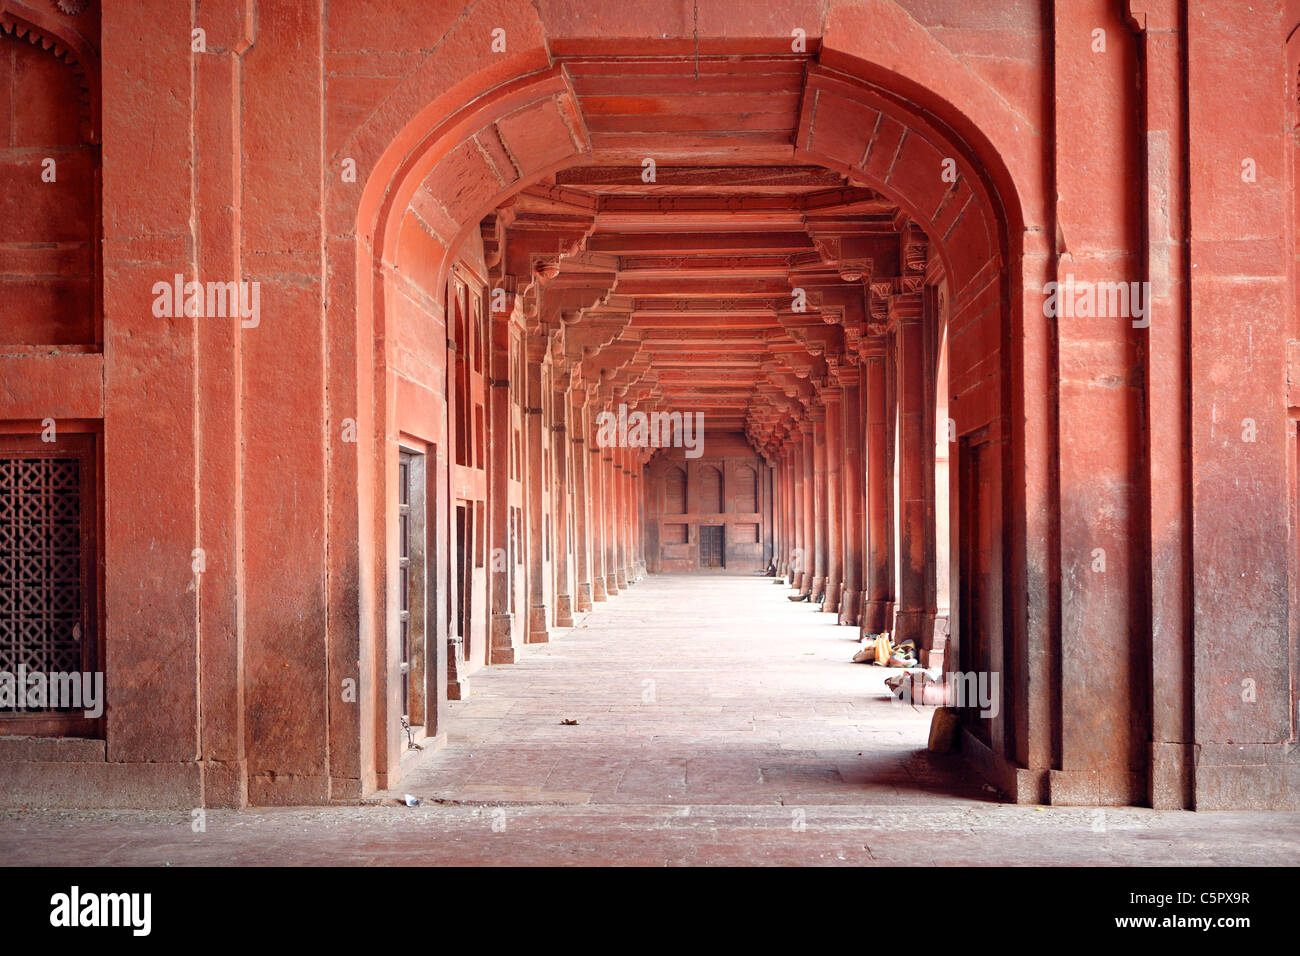 Jami Masjid Moschee (1571), Fatehpur Sikri, Indien Stockfoto